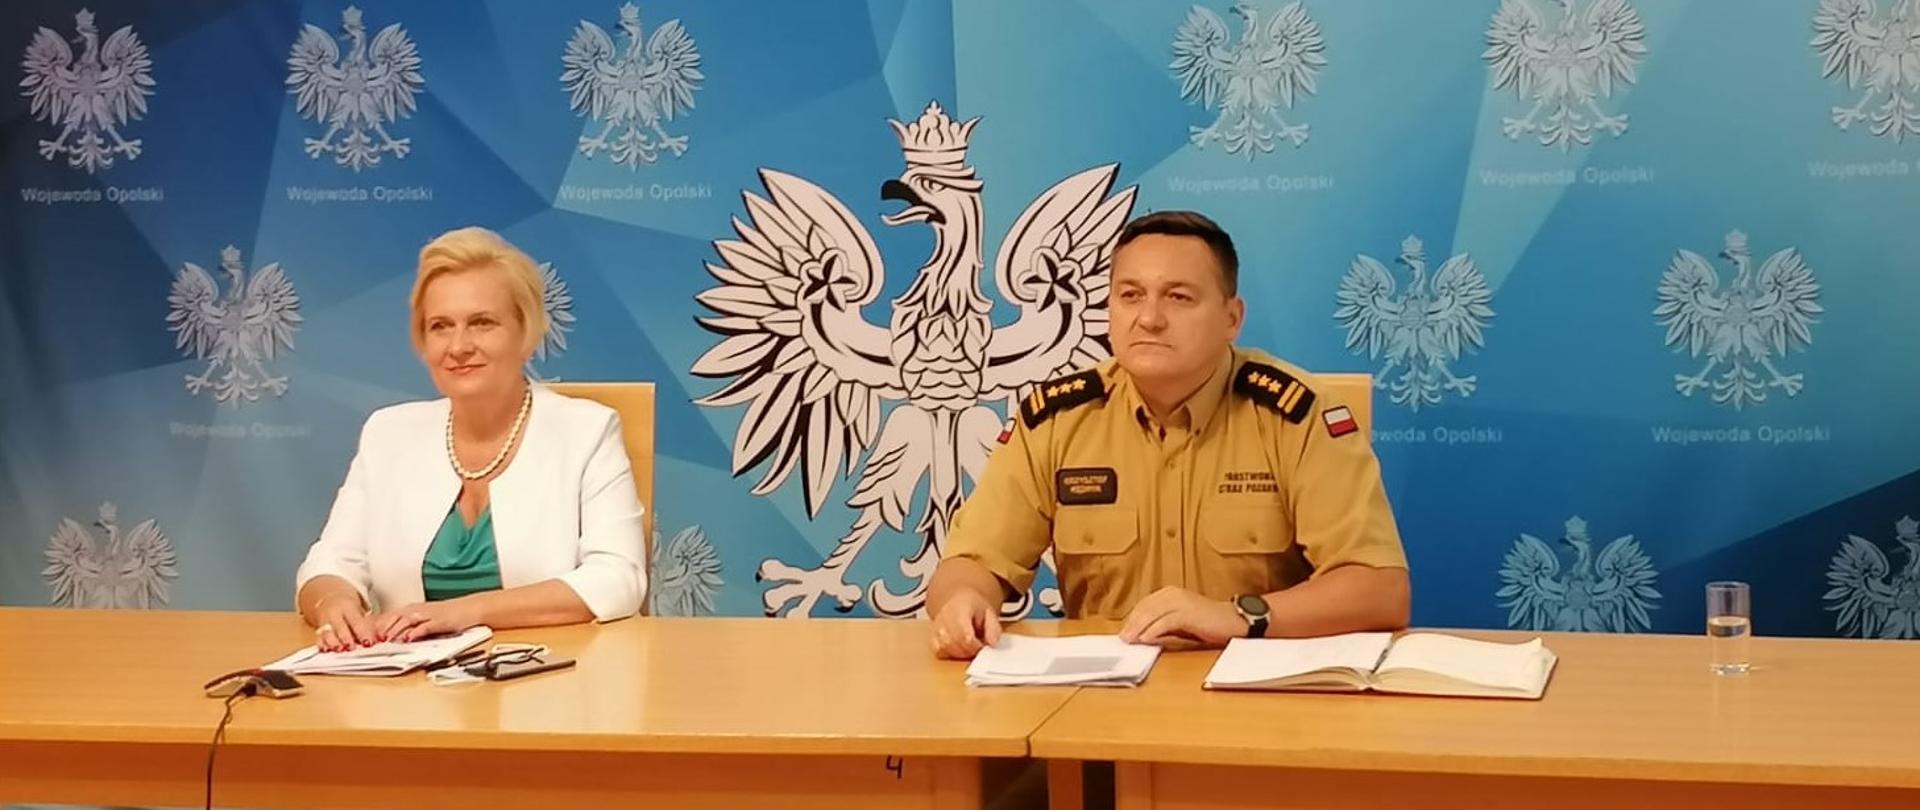 Zdjęcie przedstawia Wicewojewodę Opolskiego oraz Komendanta Wojewódzkiego PSP siedzących przy stole na tle niebieskiego baneru z napisem "Wojewoda Opolski".